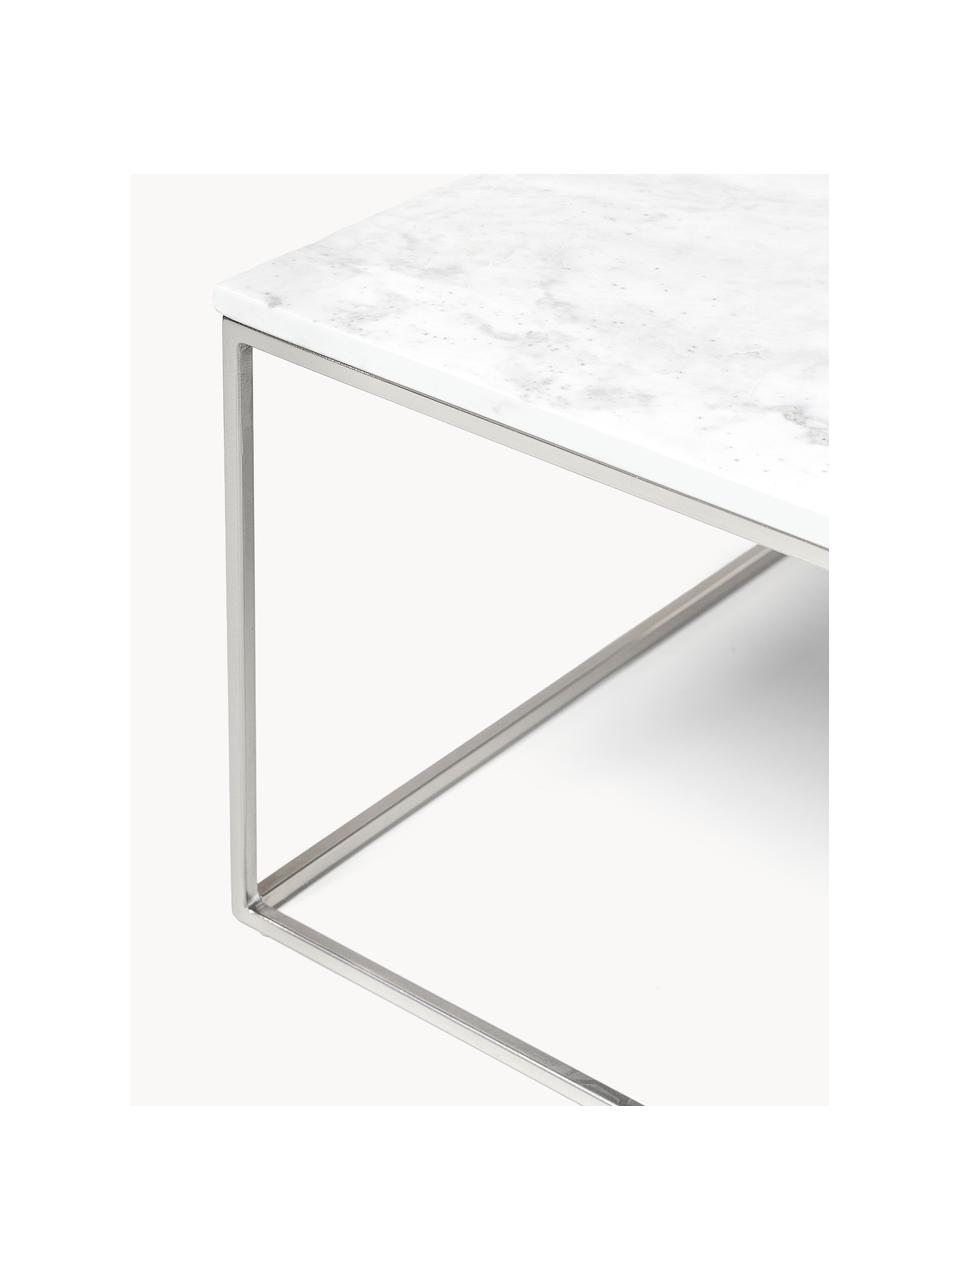 Marmor-Couchtisch Alys, Tischplatte: Marmor, Gestell: Metall, pulverbeschichtet, Weiss marmoriert, Silberfarben, B 80 x T 45 cm